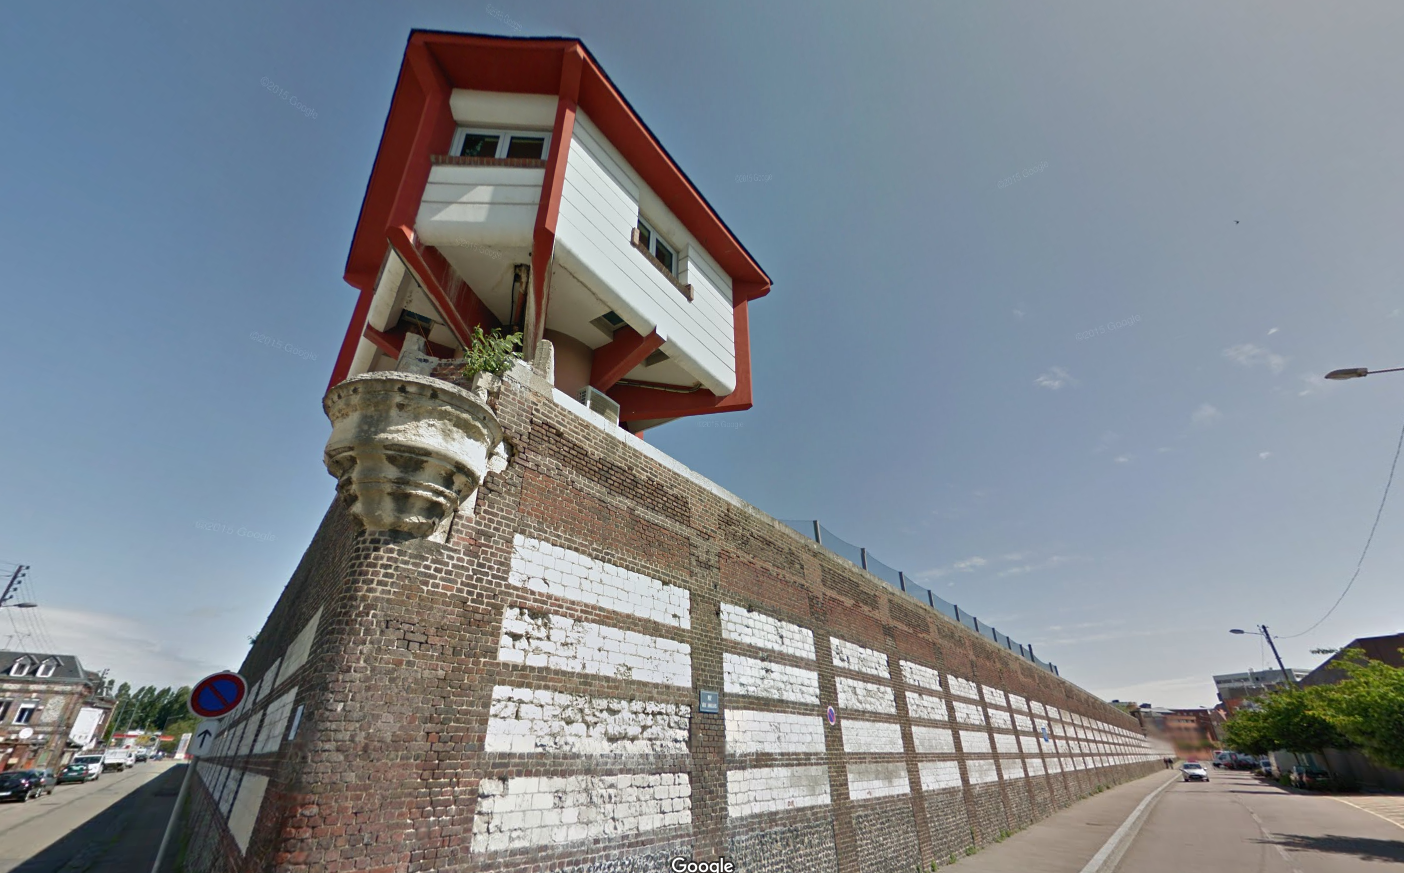 Le parachutage d'objets les plus divers (drogue, téléphone portable, nourriture...) est un phénomène que connaissent toutes les prisons françaises. Photo d'illustration de la maison d'arrêt de Rouen @Google Maps